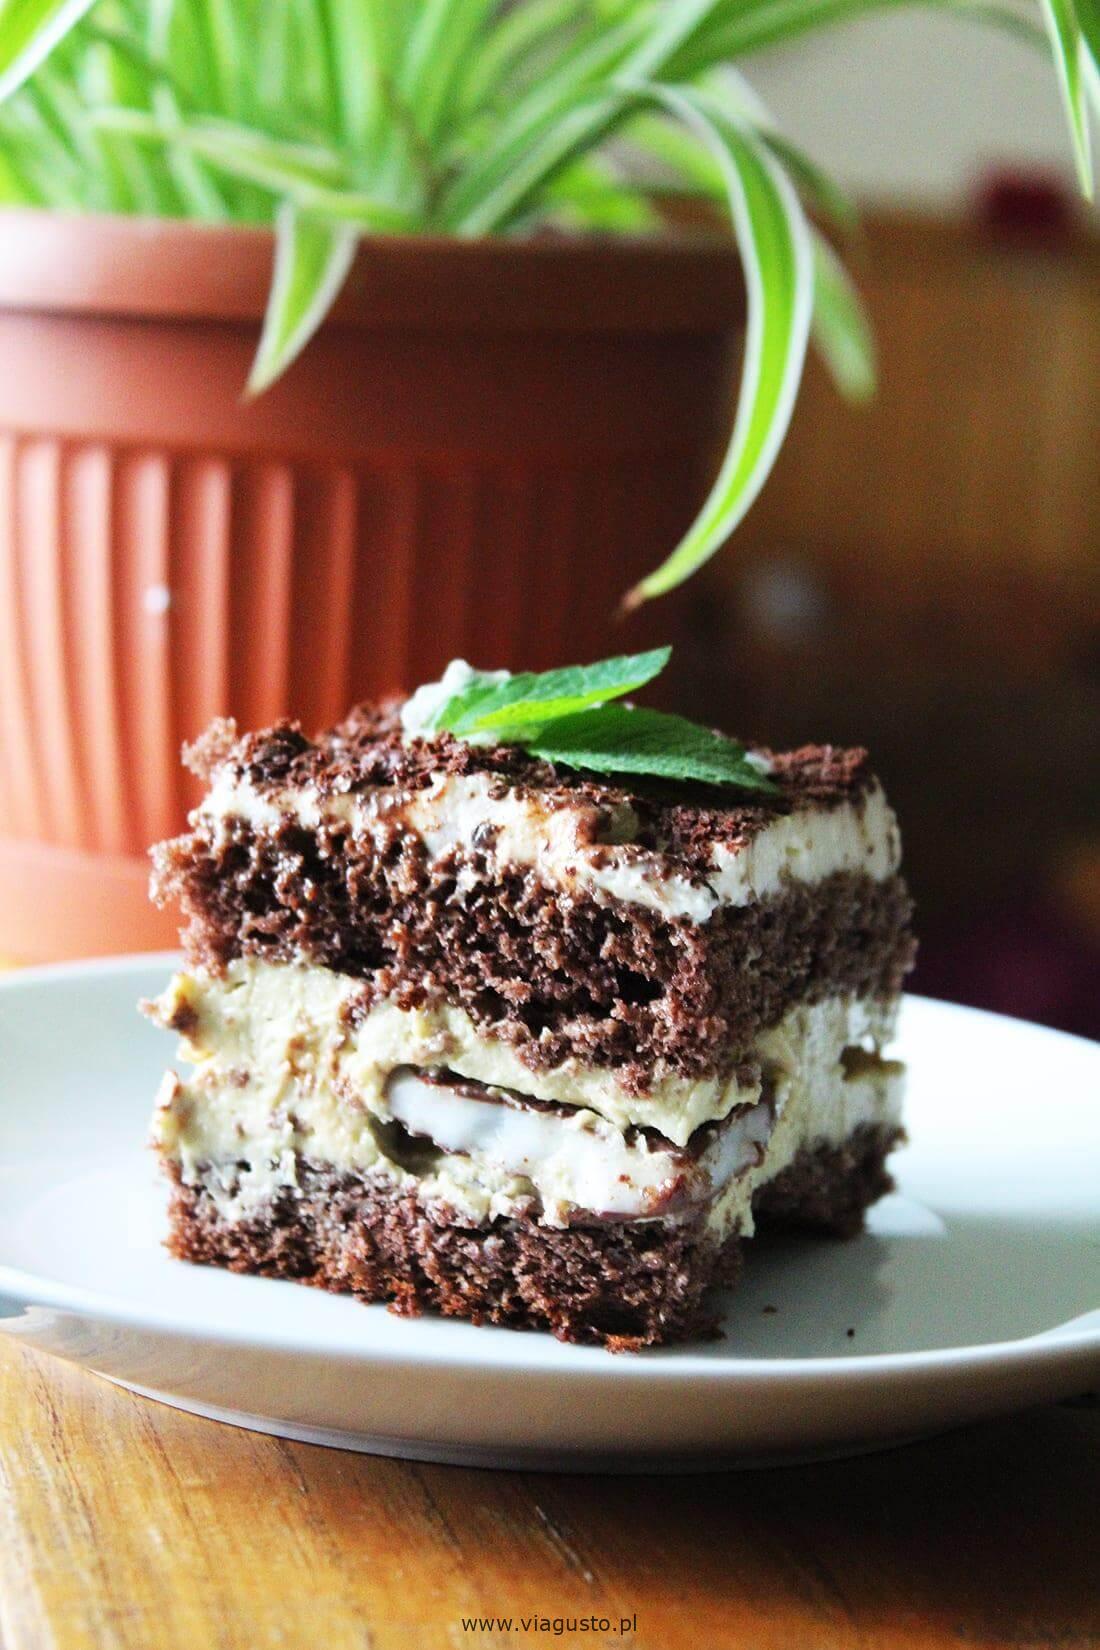 Ciasto miętowe – Miętowa Rozpusta – miętowy tort z czekoladą